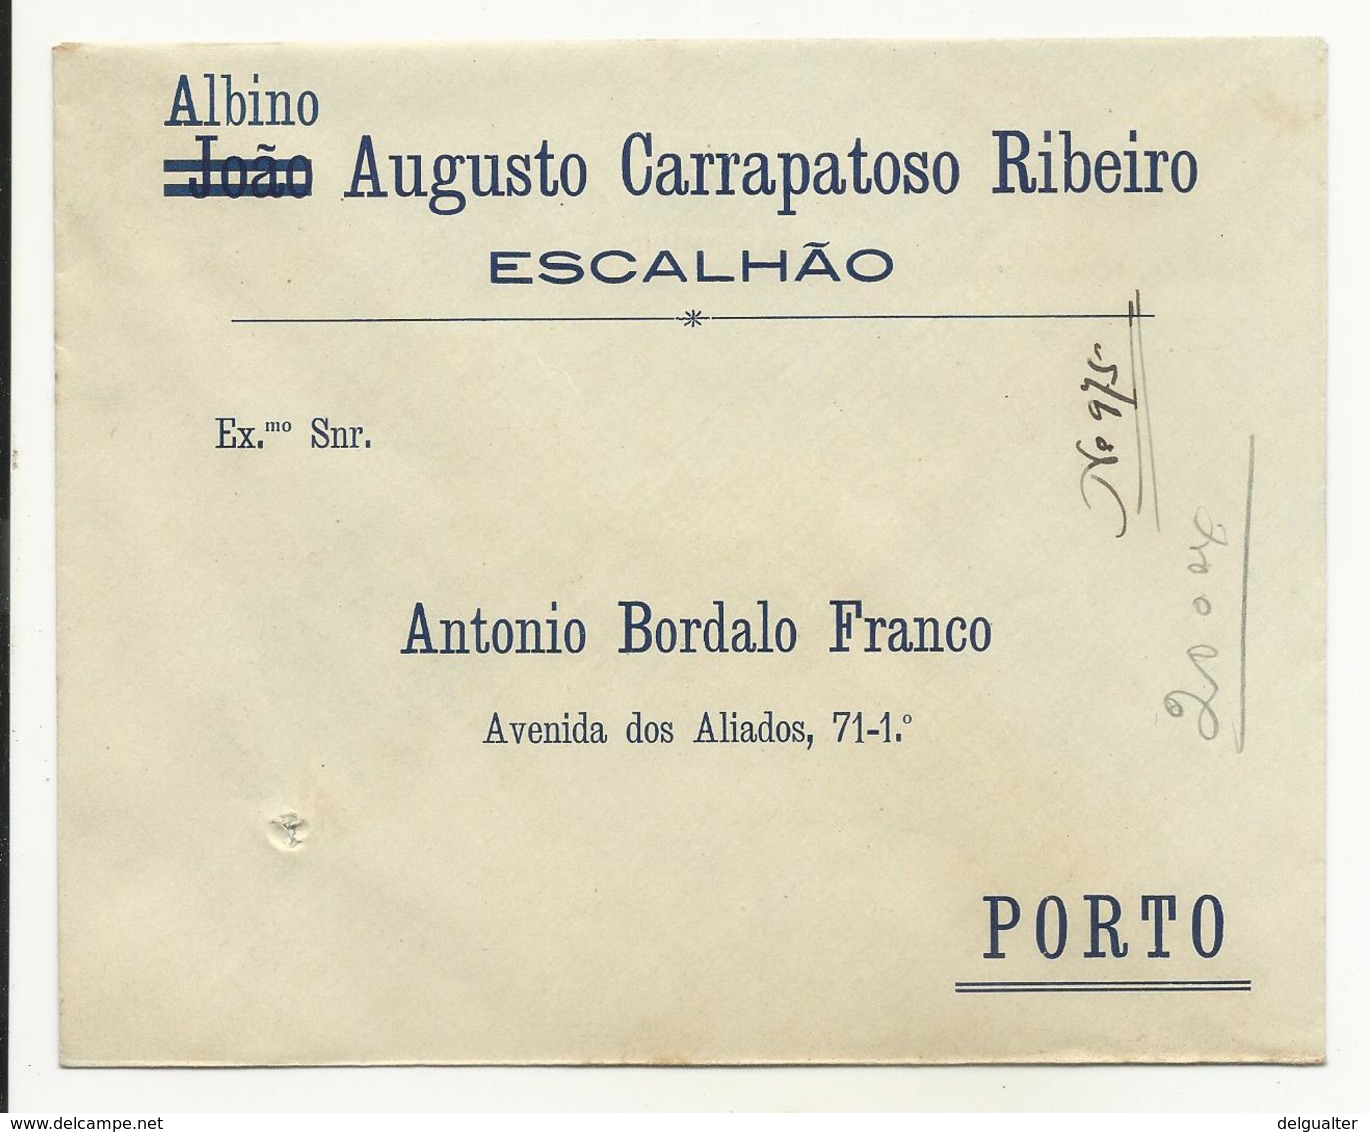 Cover - Portugal - Albino Augusto Carrapatoso Ribeiro - Escalhão - Holed - Pubblicitari